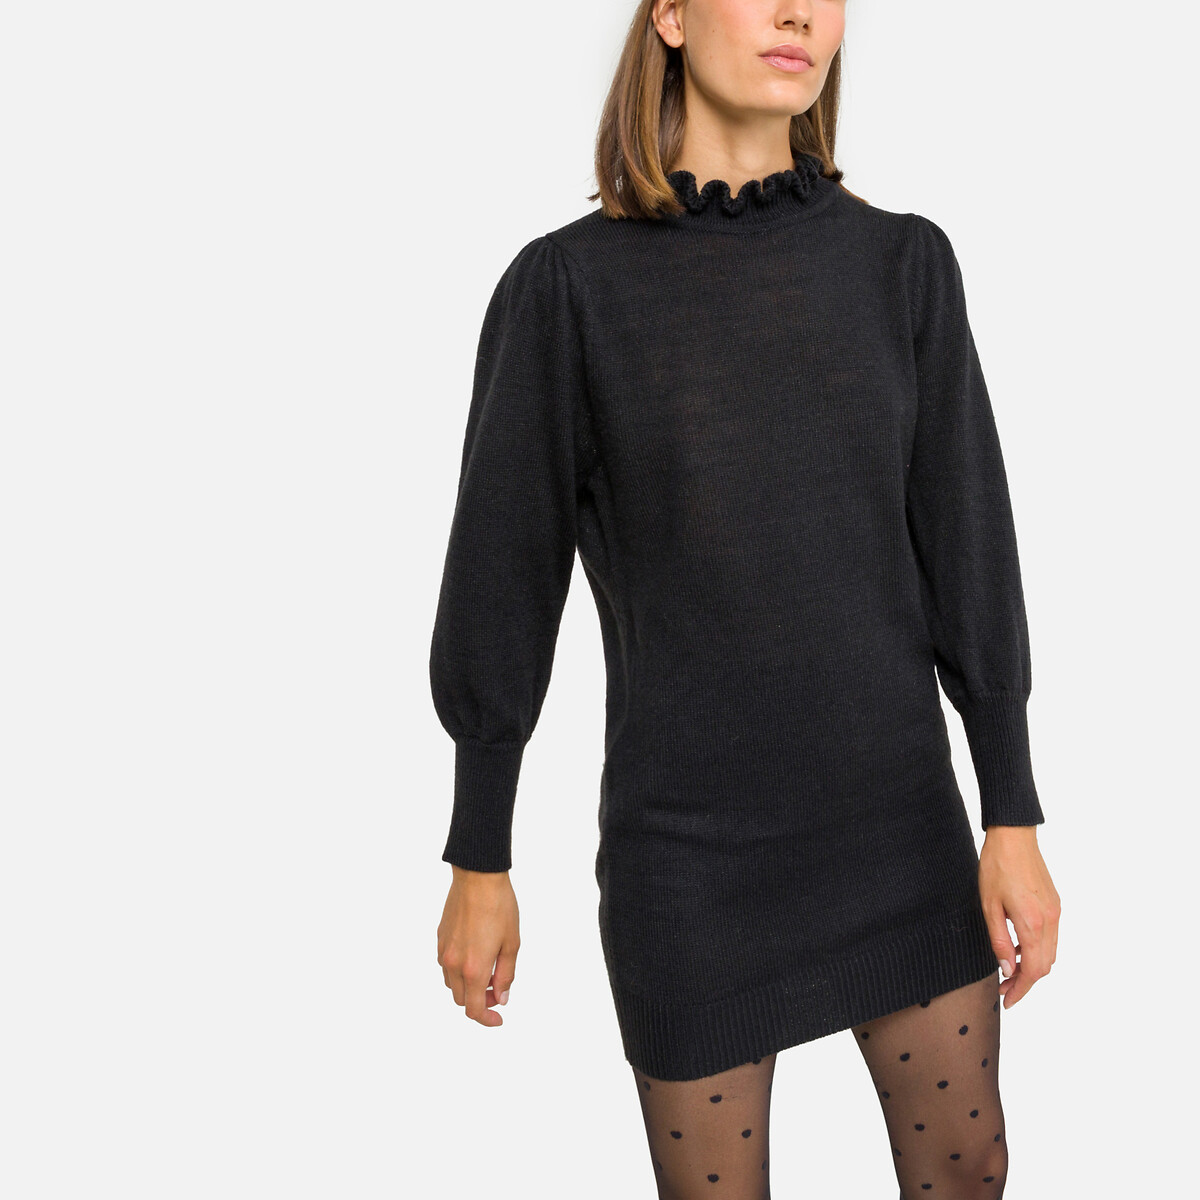 Платье-пуловер SEE U SOON Платье-пуловер Воротник-стойка S/M черный, размер S/M Платье-пуловер Воротник-стойка S/M черный - фото 1